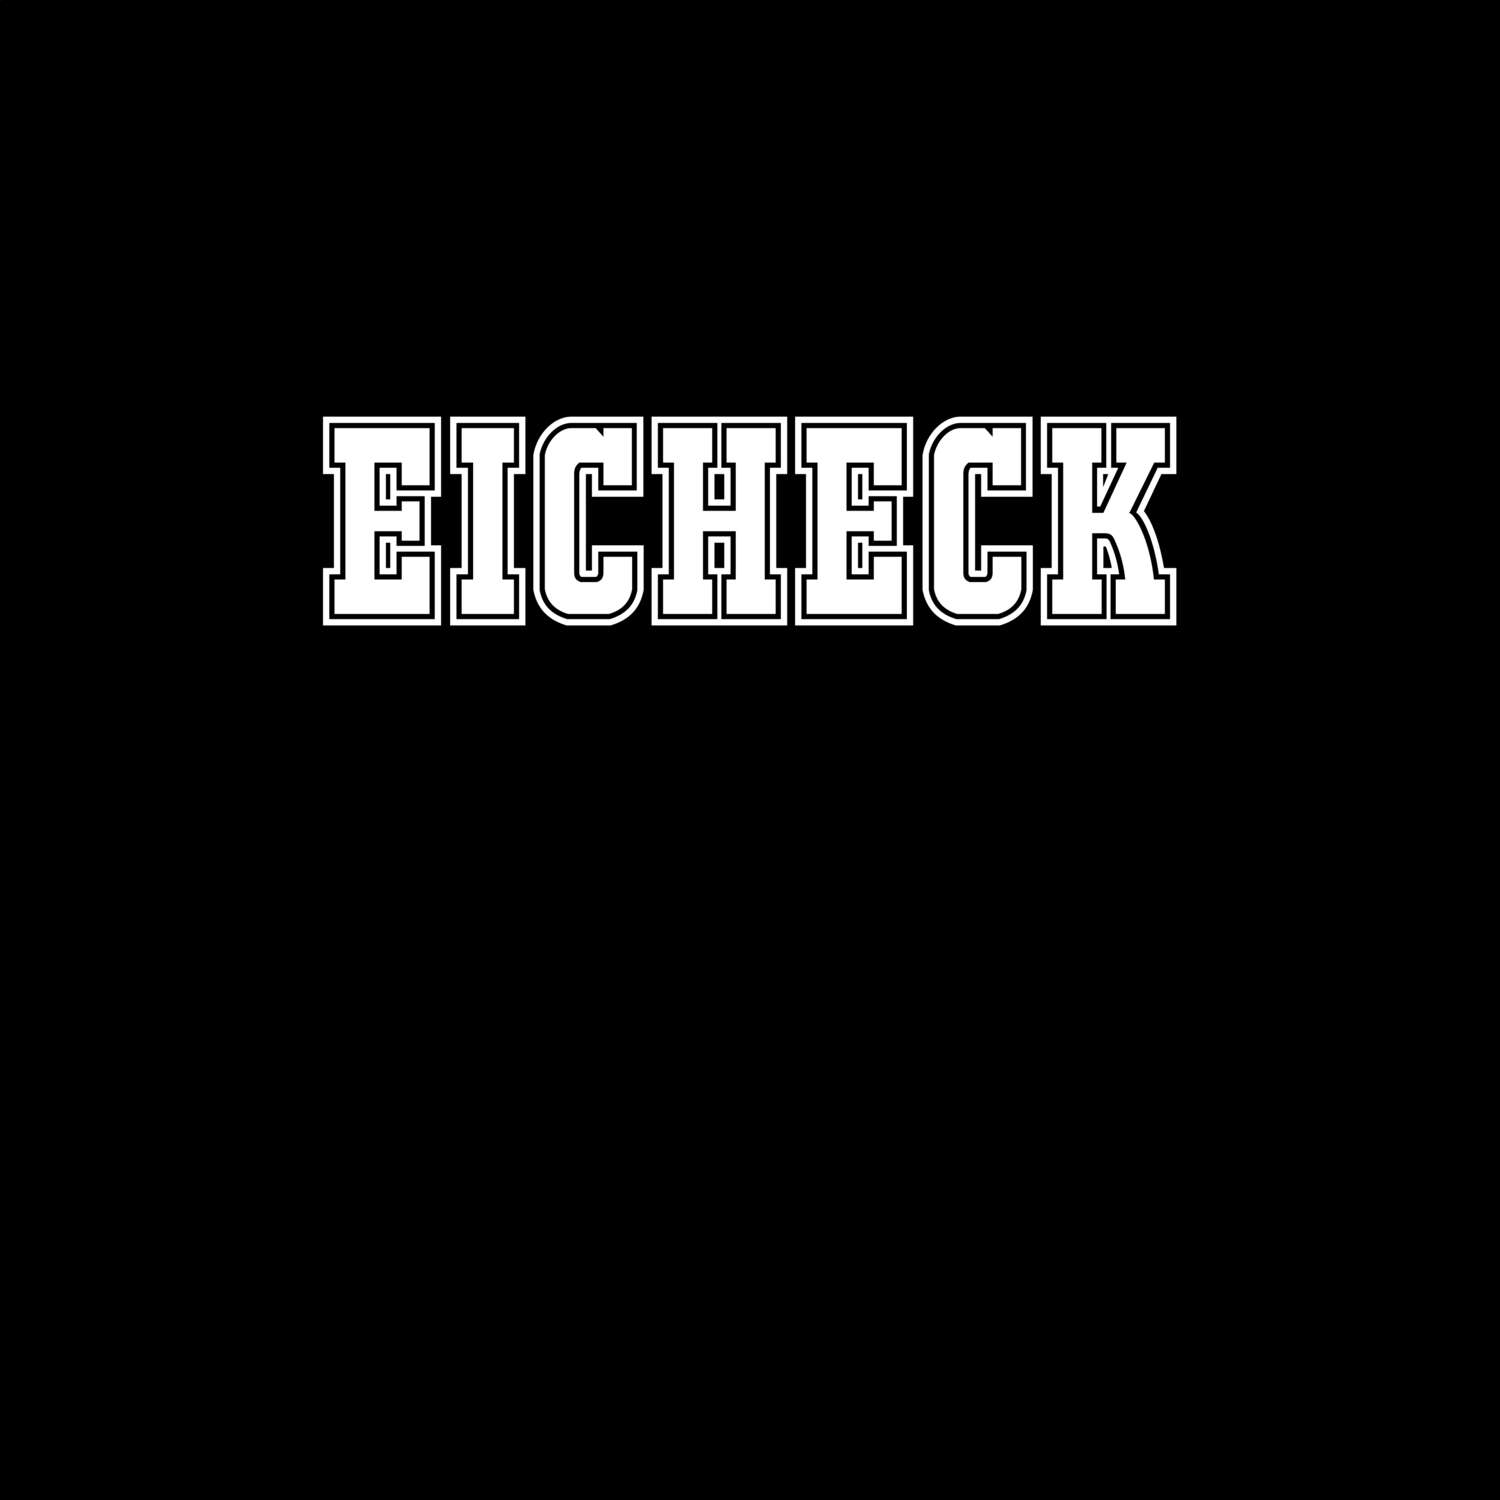 Eicheck T-Shirt »Classic«